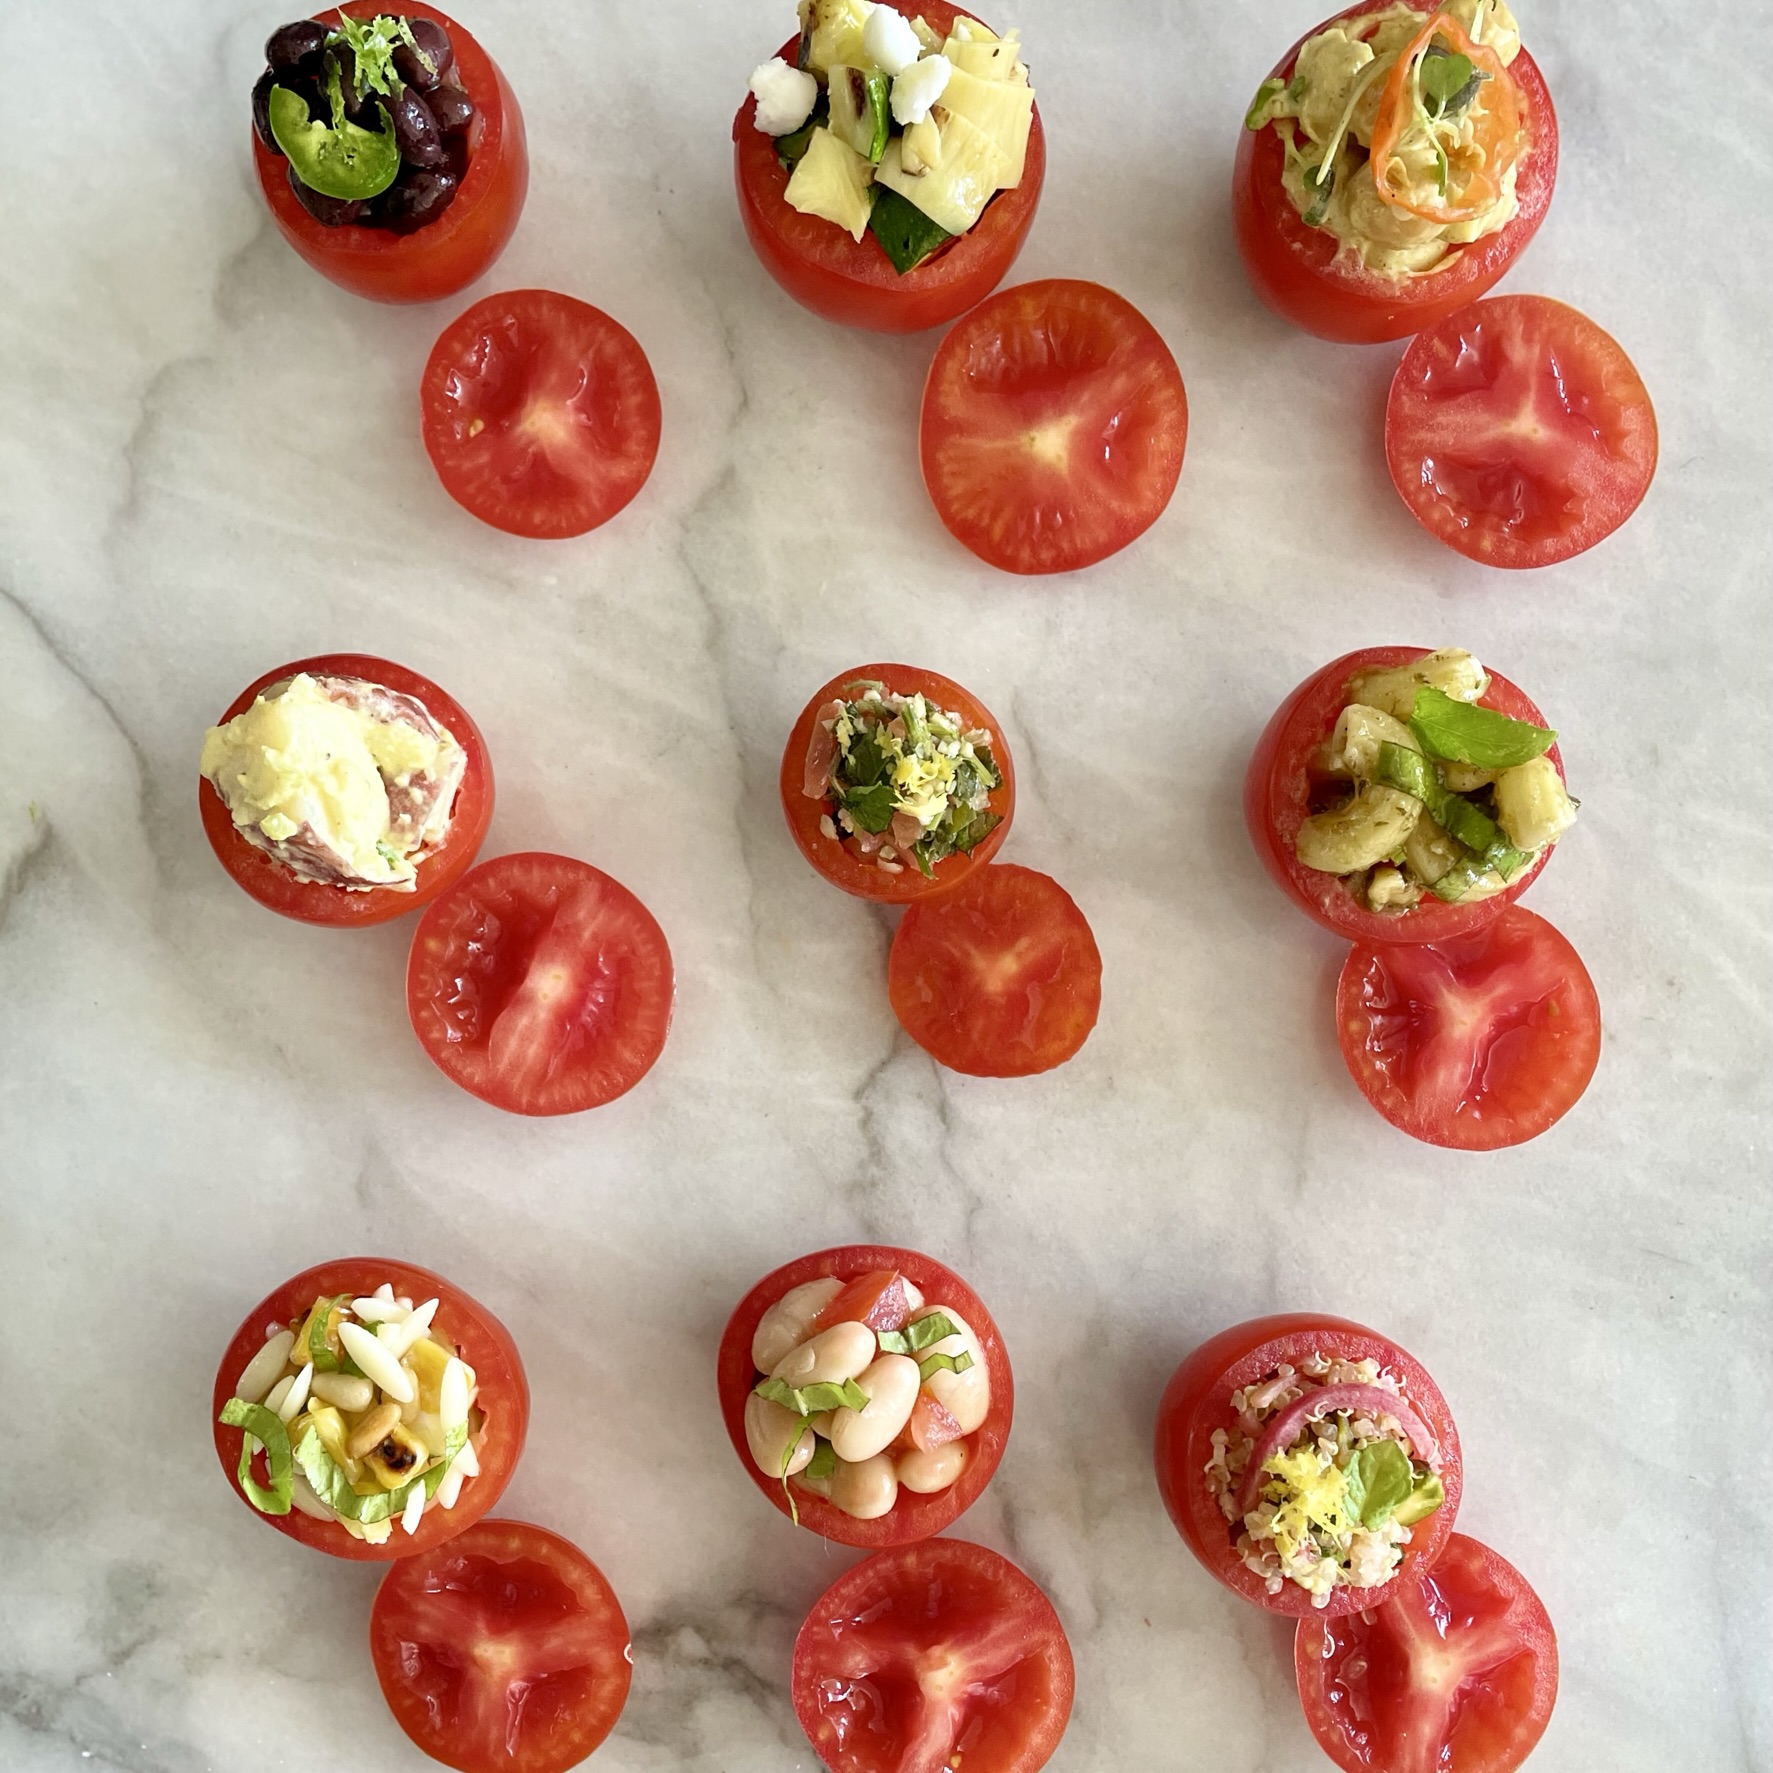 Salad-Stuffed Campari Tomatoes_nine stuffed tomatoes on marble